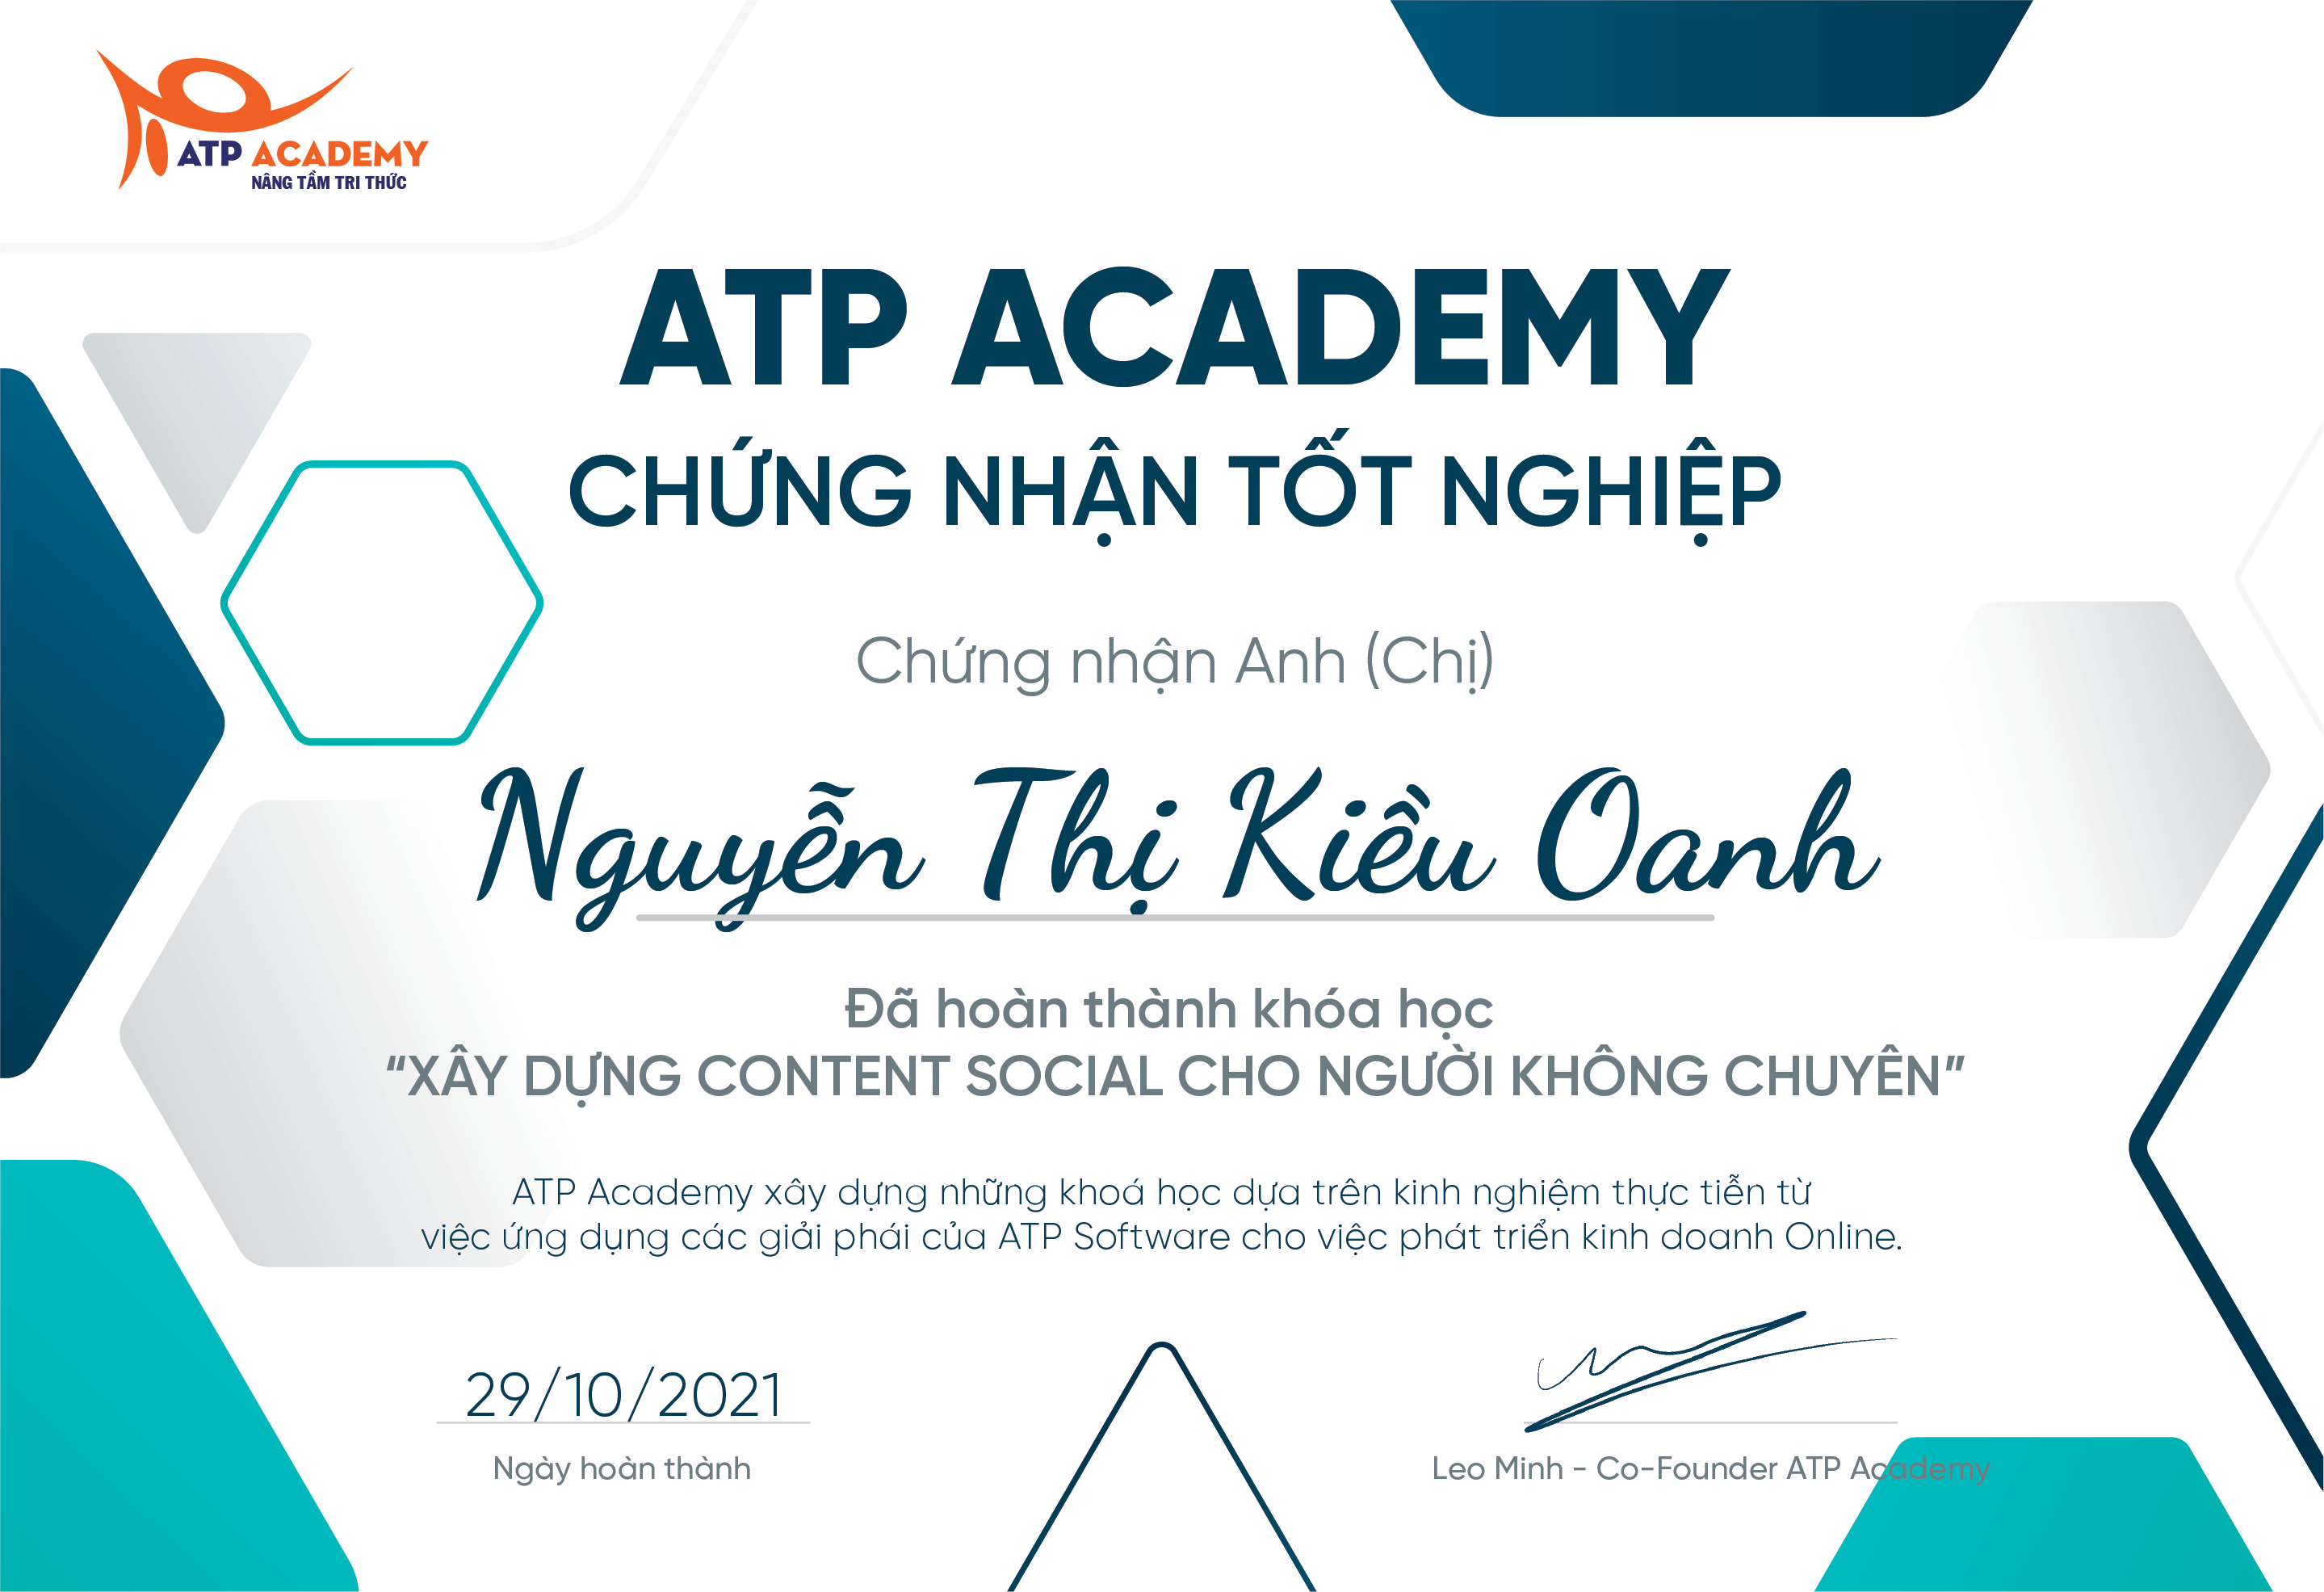 Nguyễn Thị Kiều Oanh